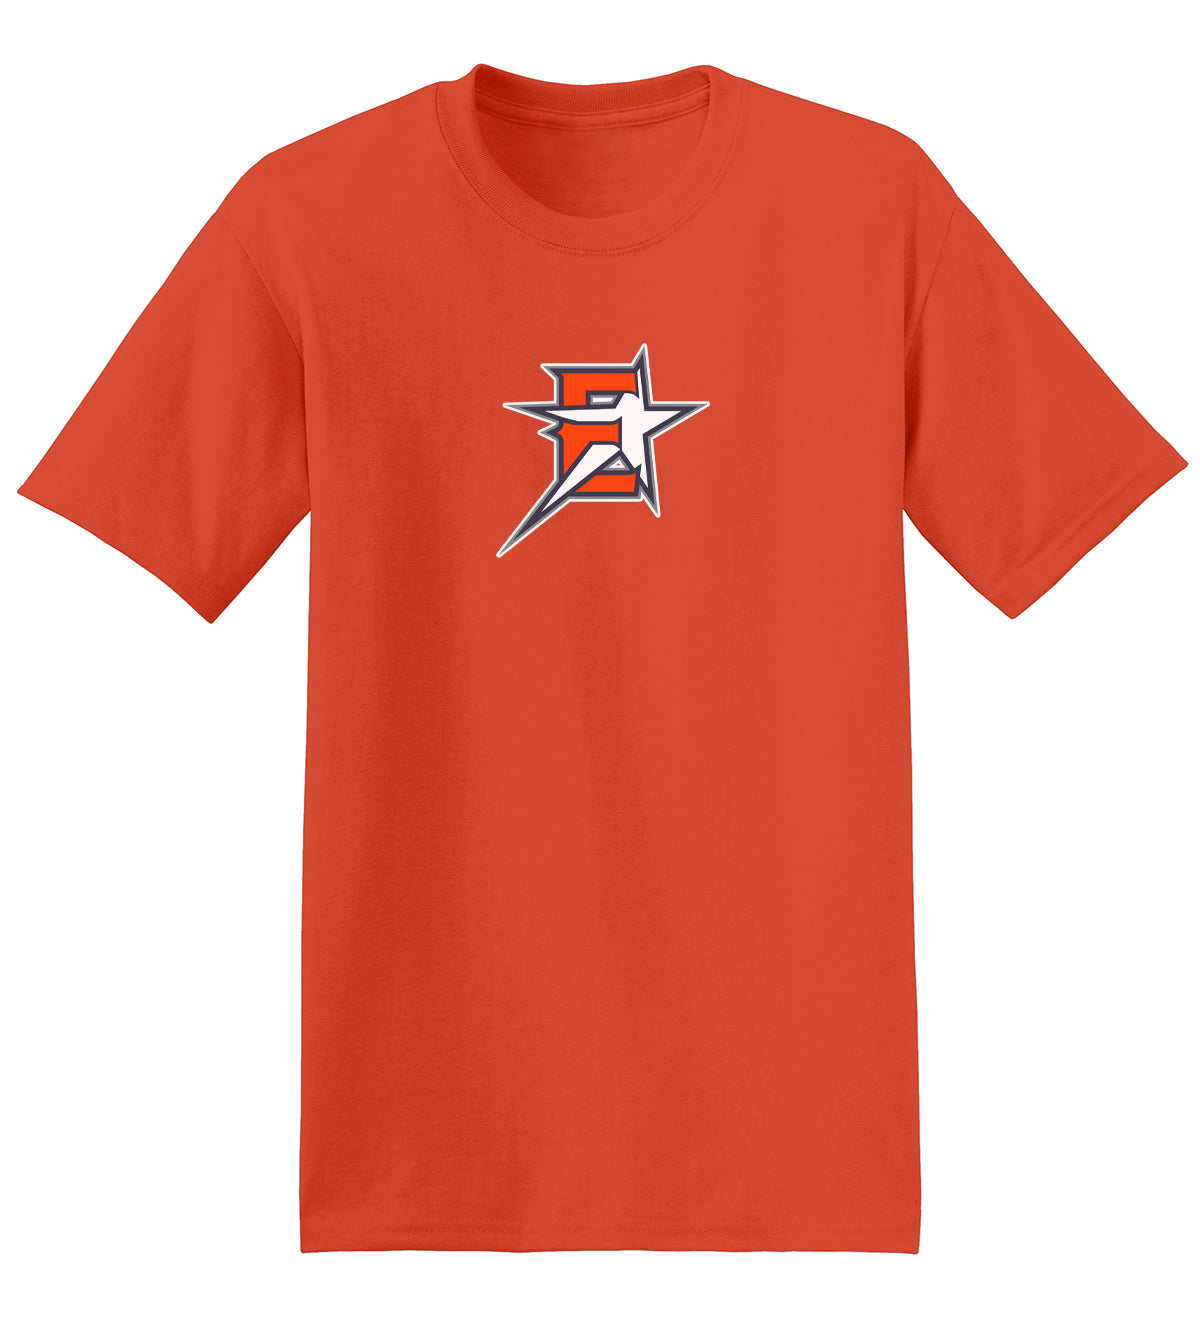 2019 Eastvale Girl's Softball T-Shirt